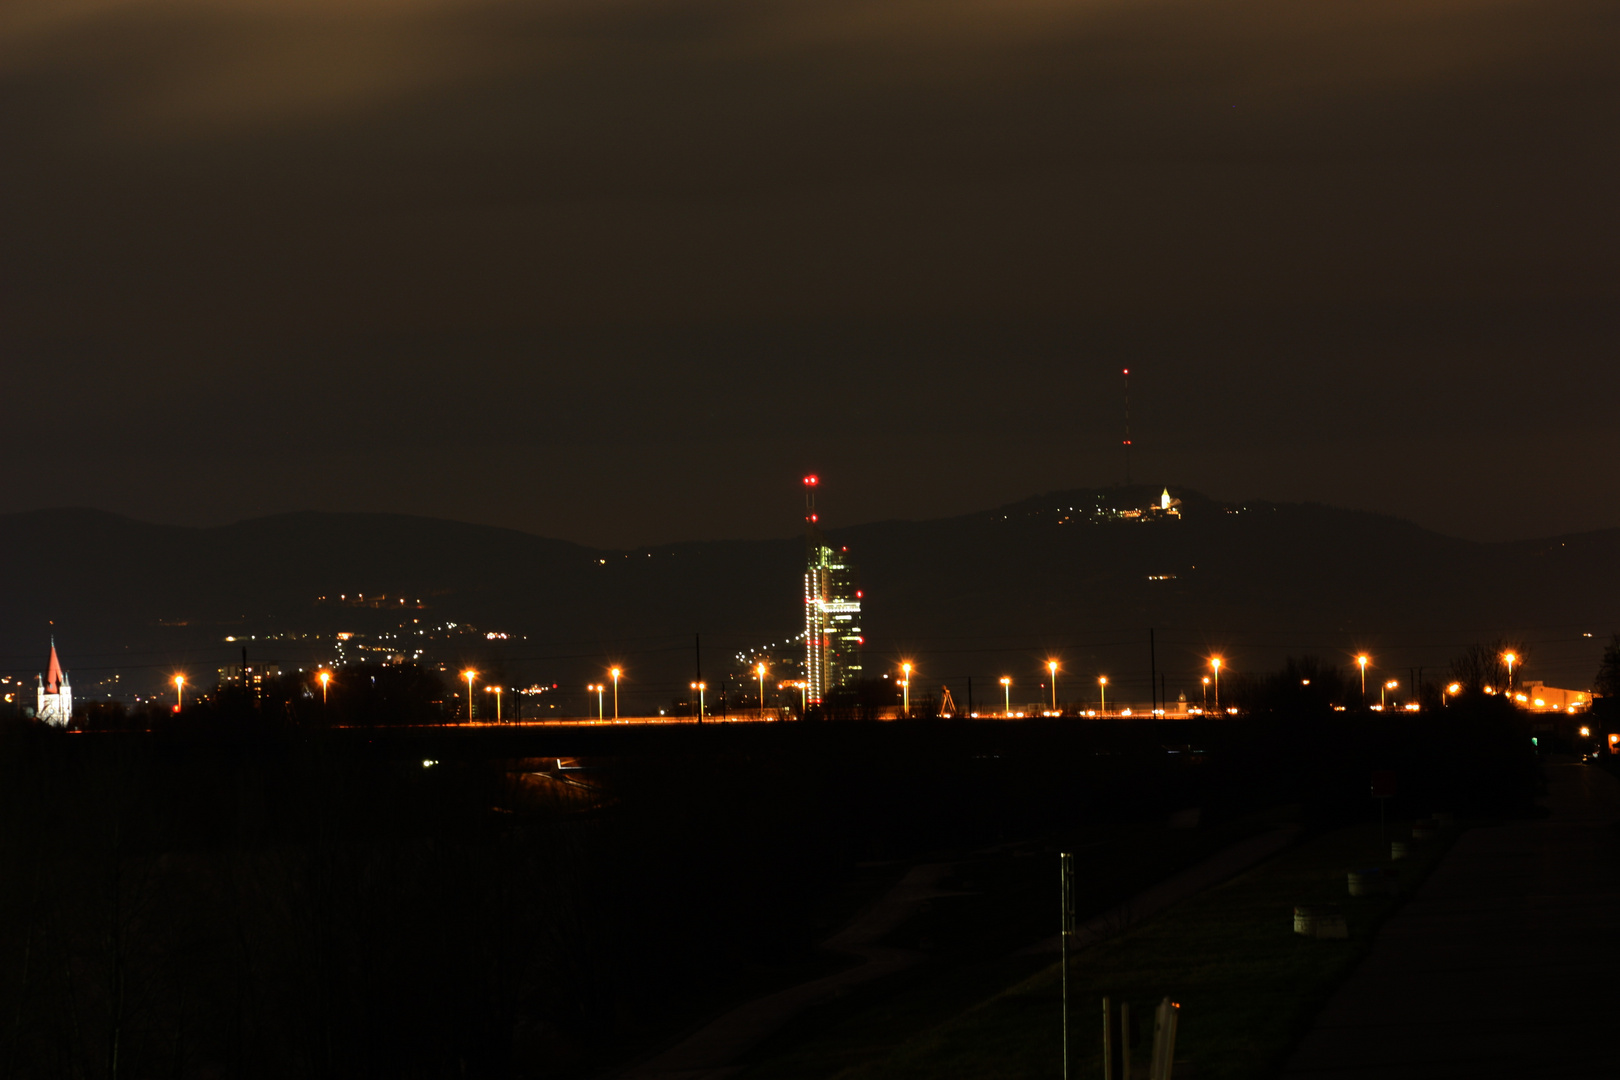 Wien bei Nacht